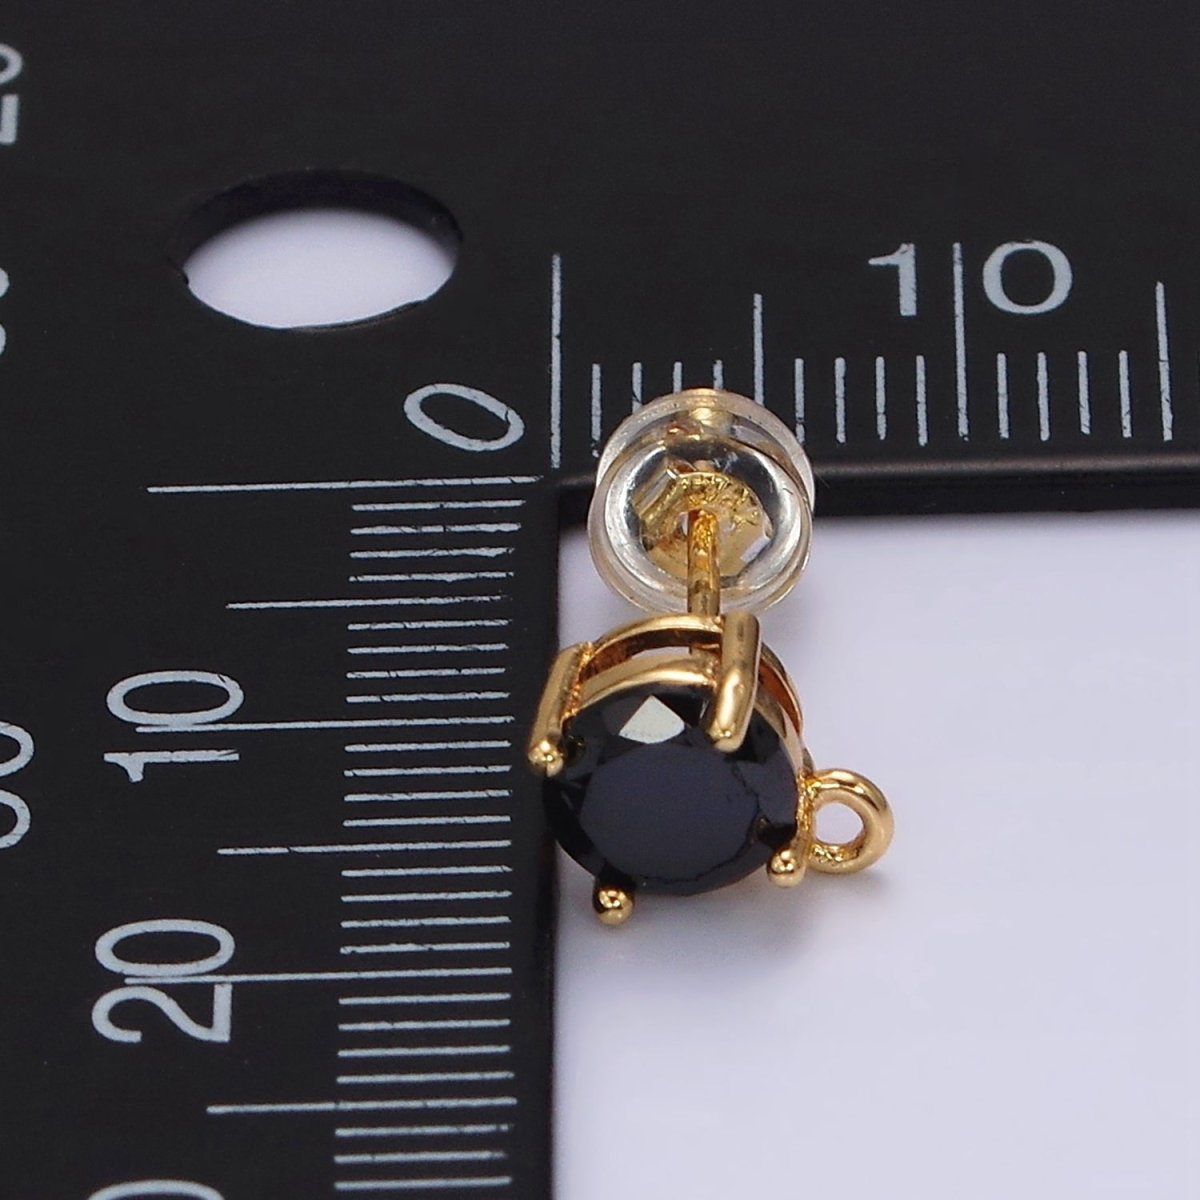 14K Gold Filled Black CZ Round Open Loop Stud Earrings | Z627 - DLUXCA